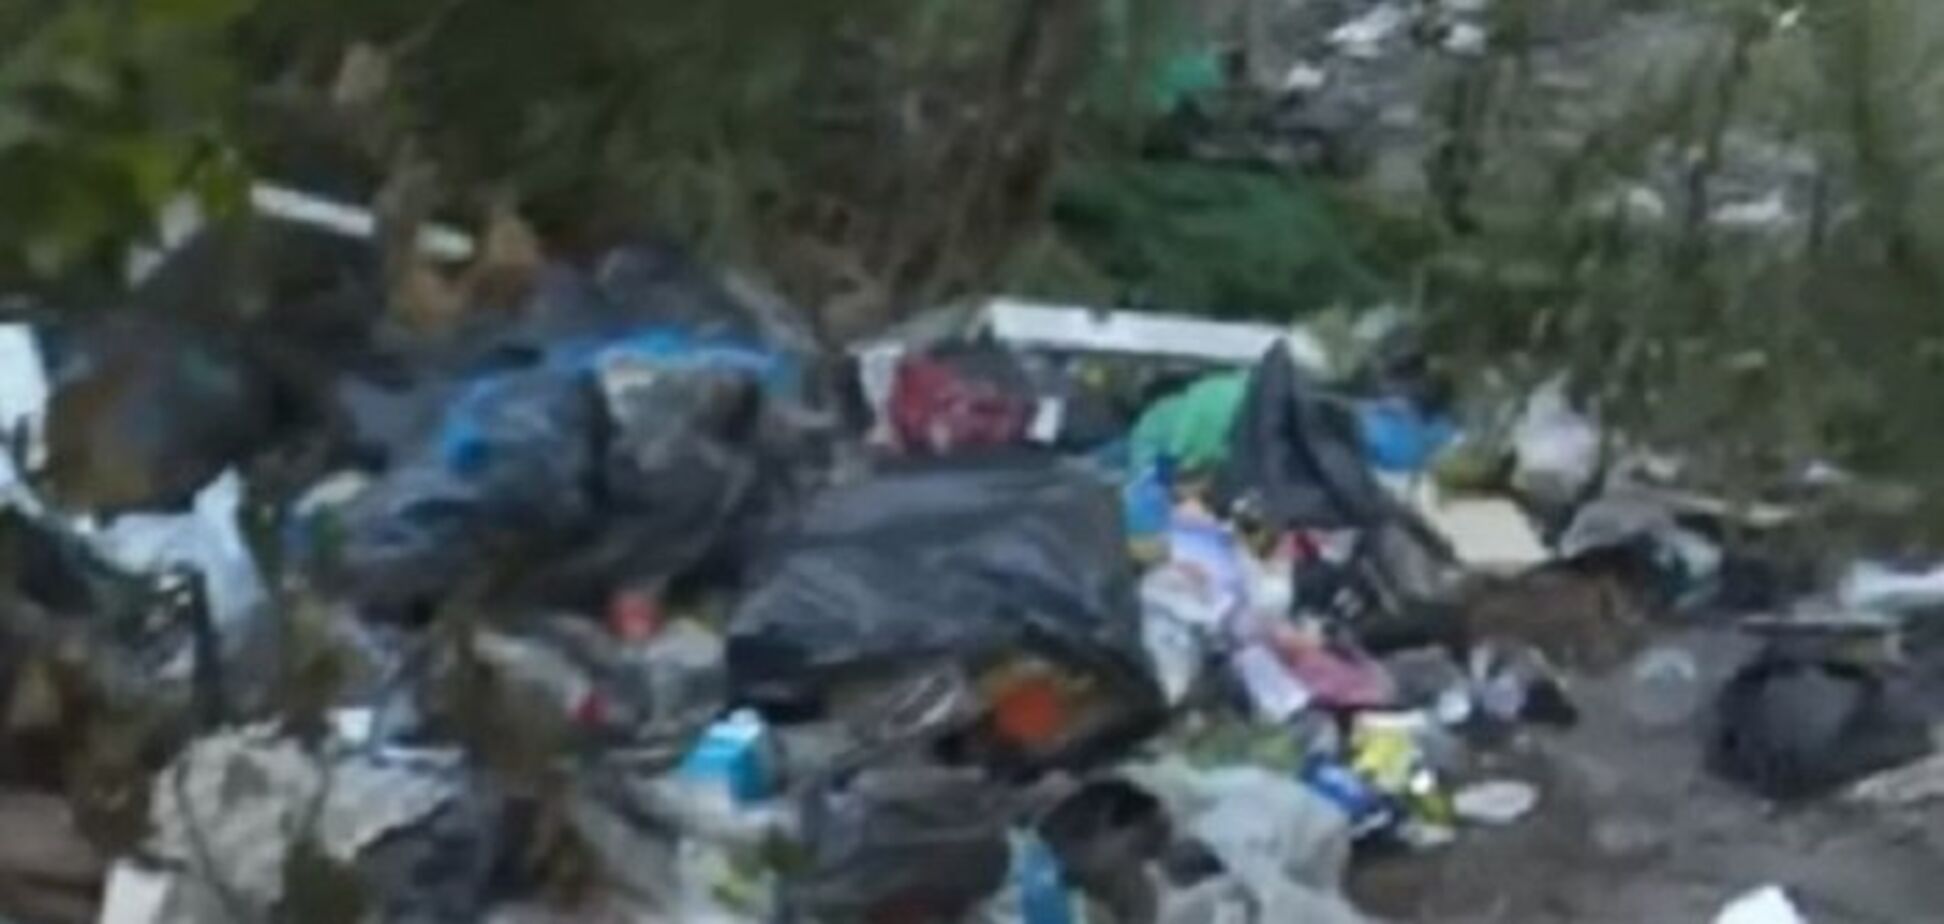 Коммунальщики бездействуют: в Киеве у метро организовали огромную свалку мусора